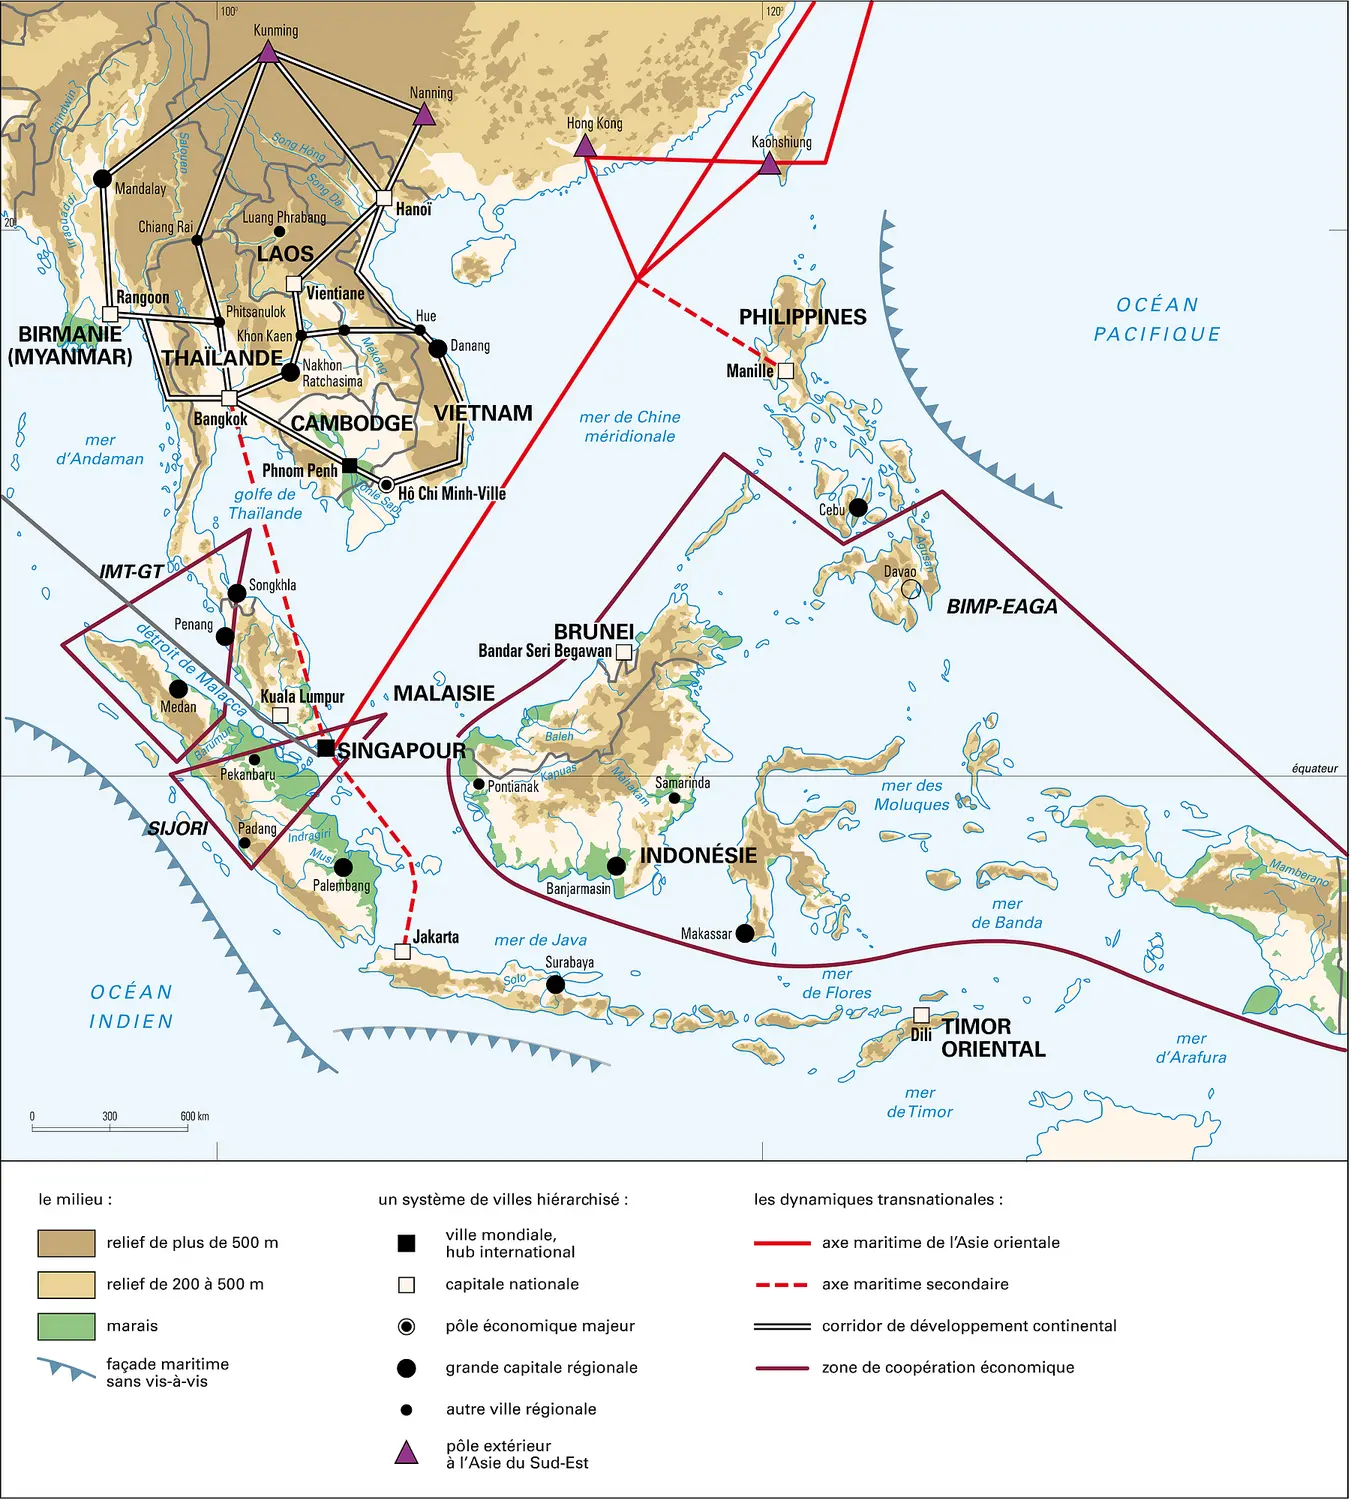 Asie du Sud-Est : dynamiques transnationales